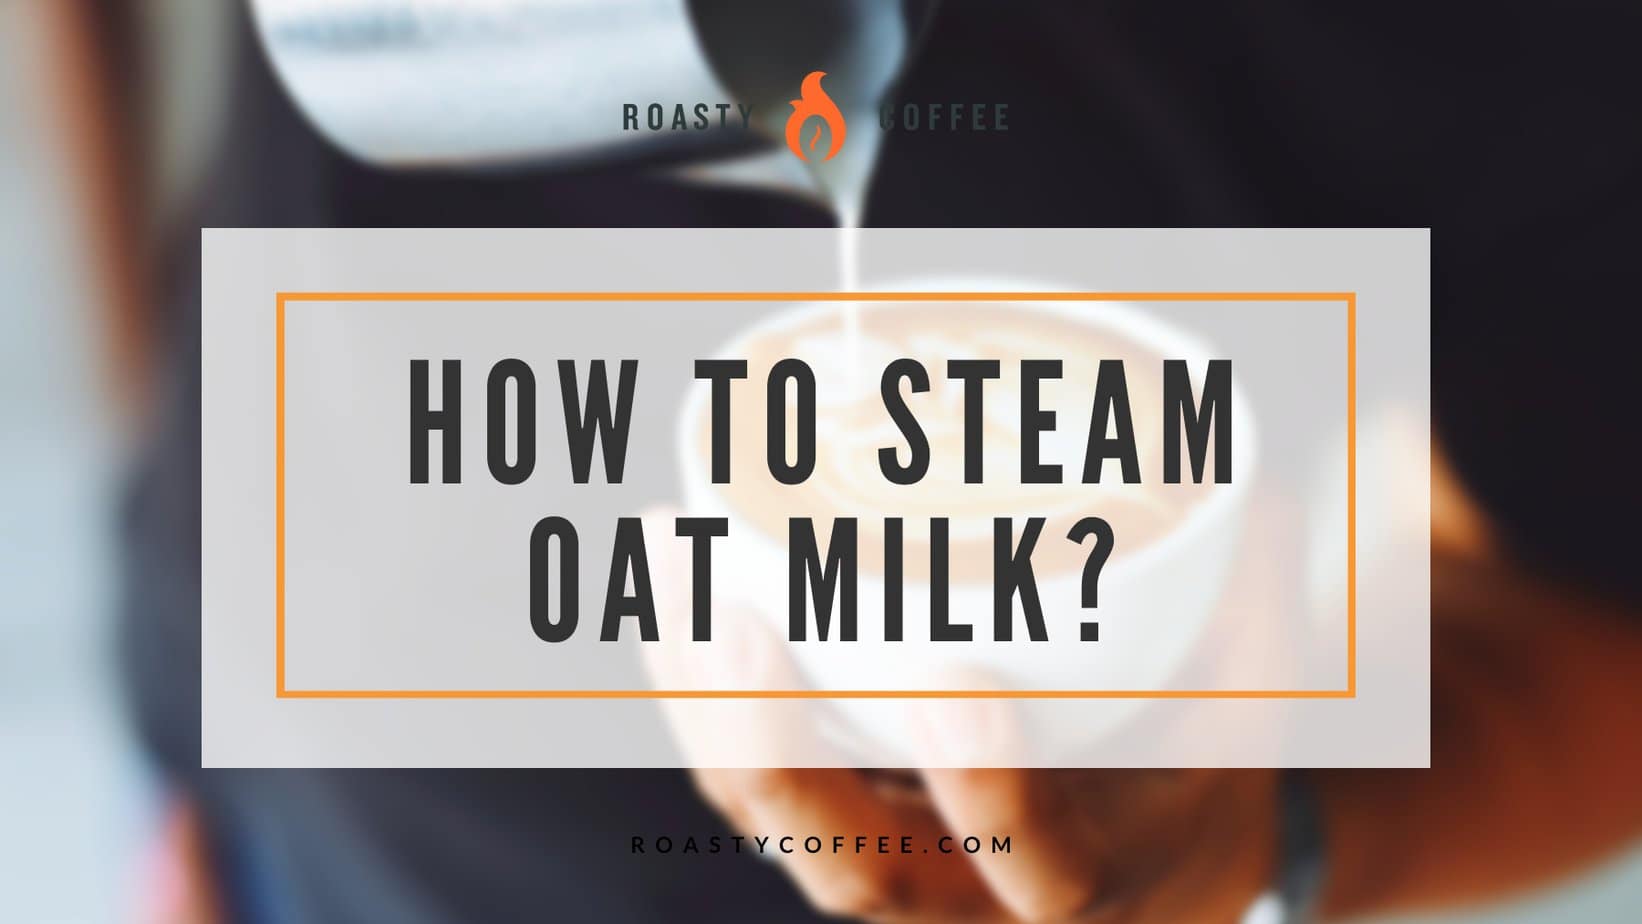 steaming oat milk